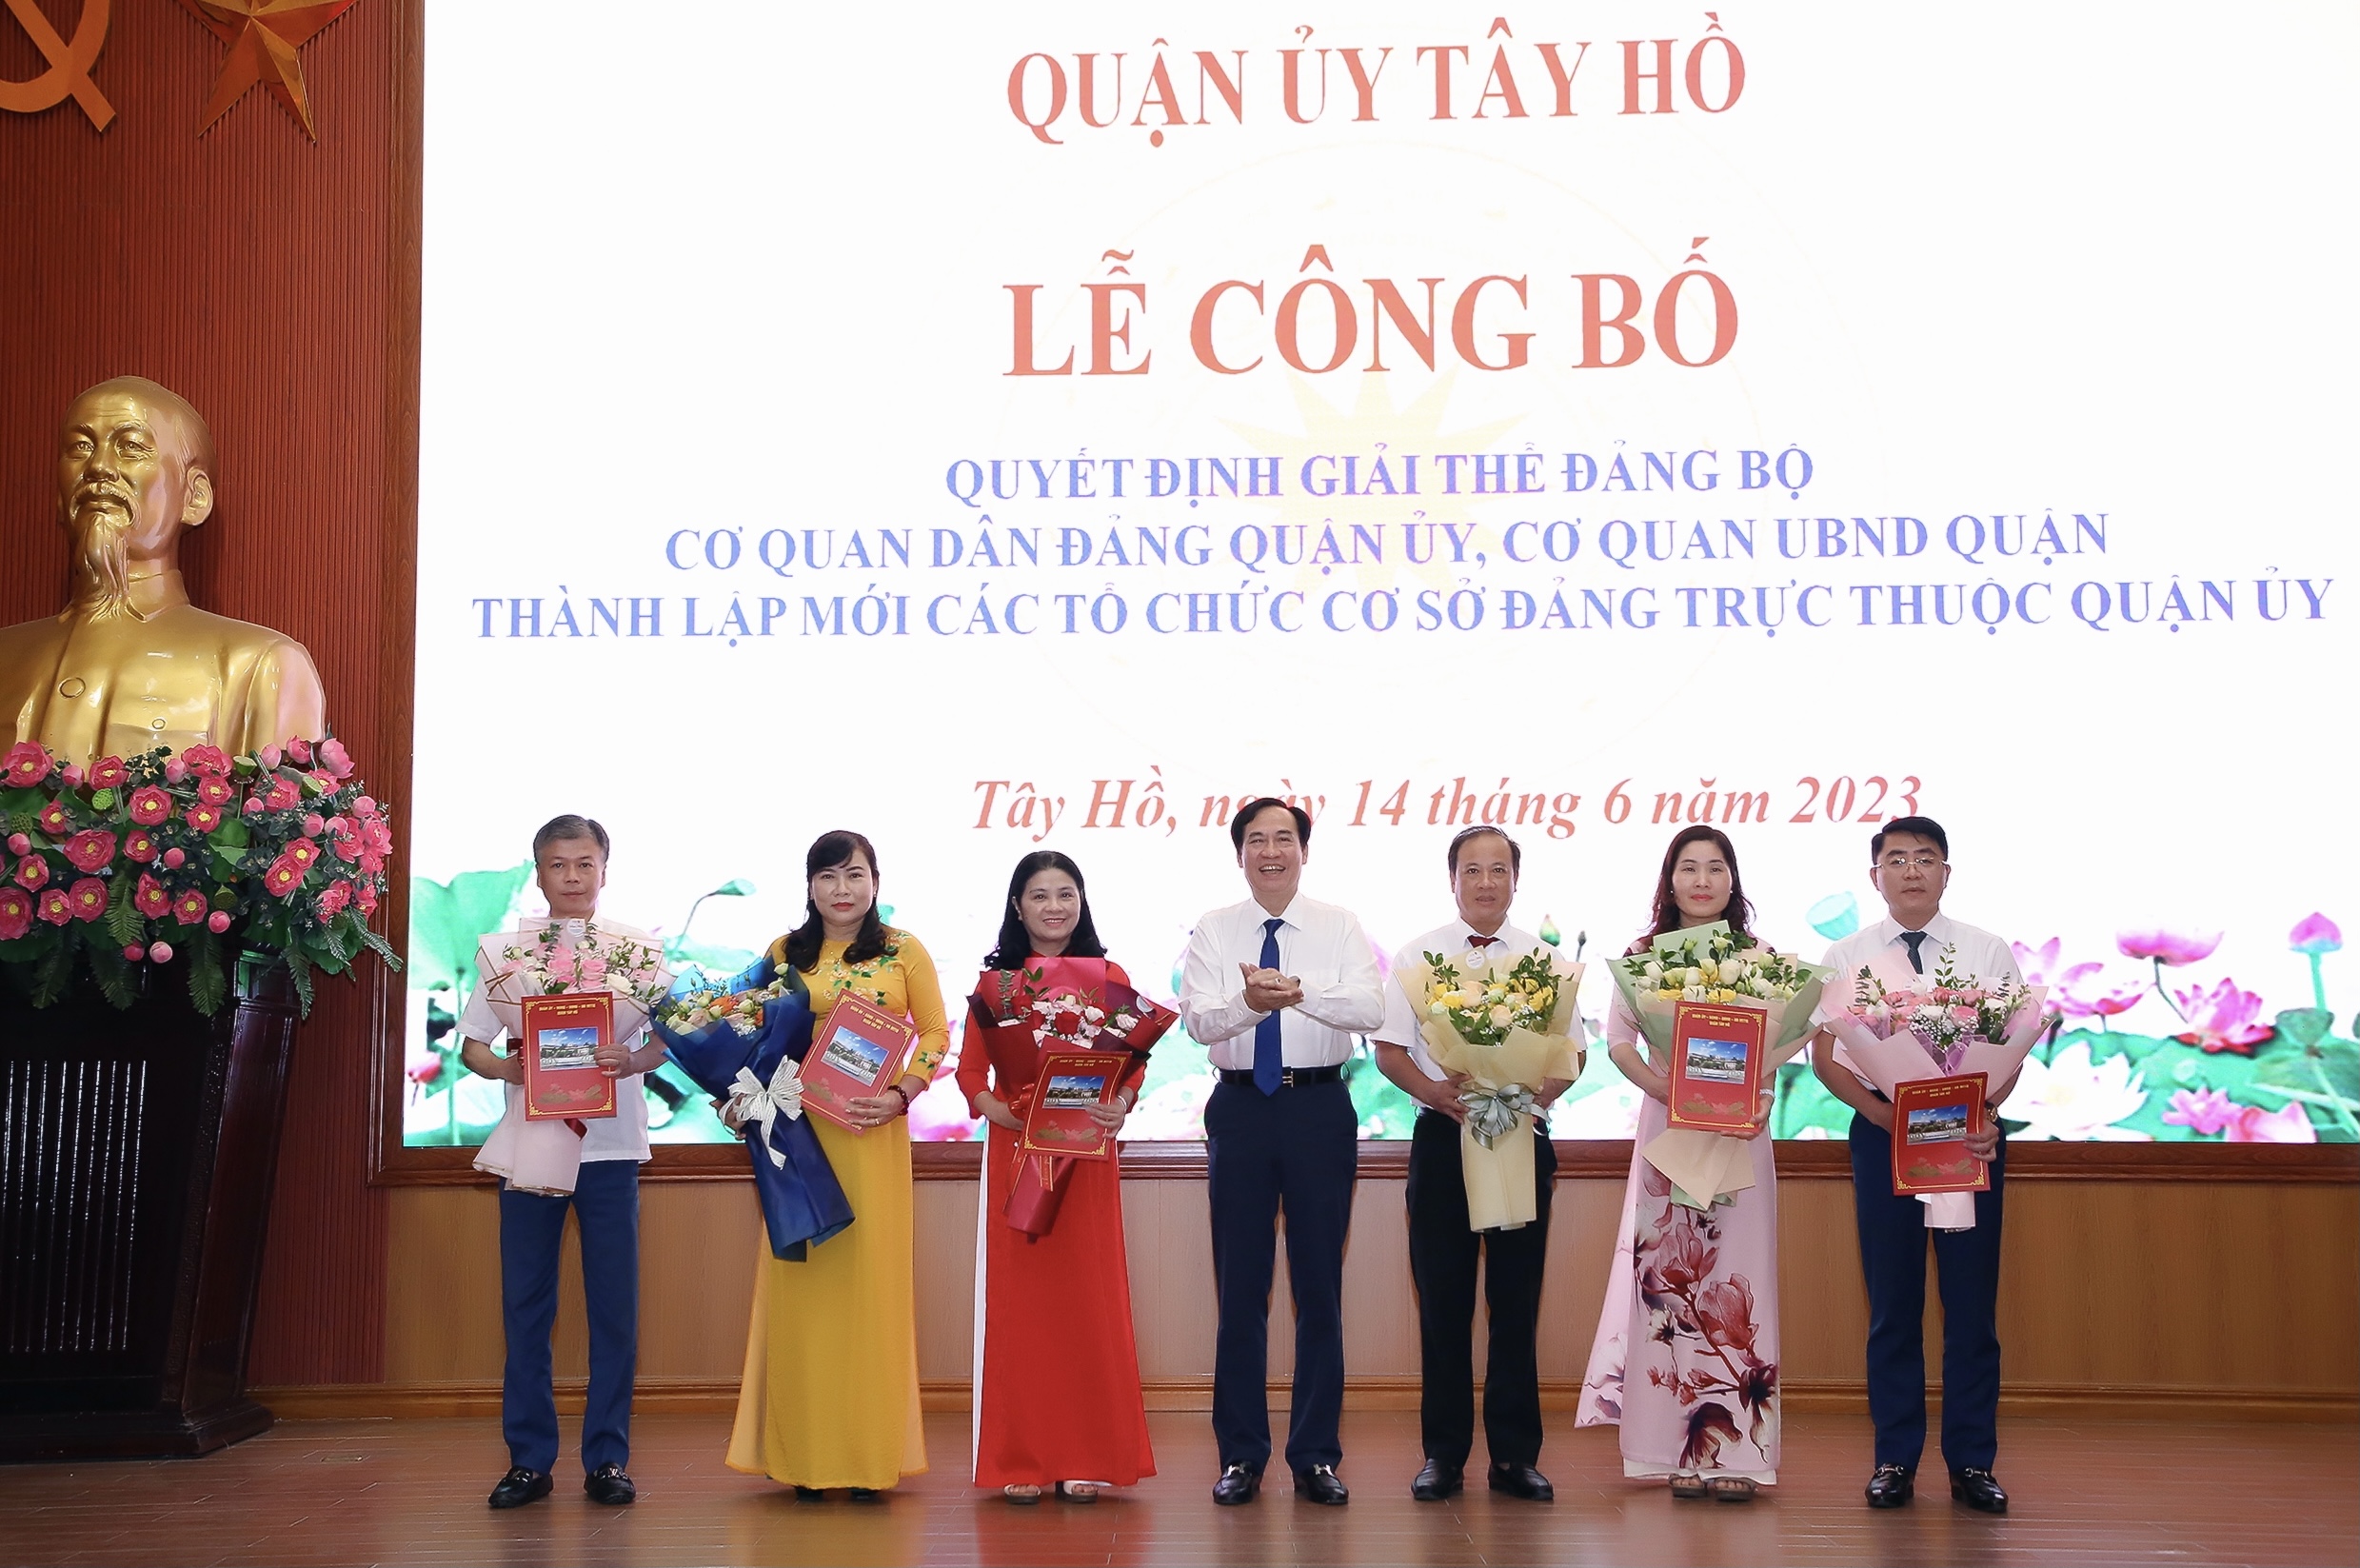 Đồng chí Nguyễn Anh Tuấn, Phó Bí thư Thường trực Quận ủy Tây Hồ trao quyết định và tặng hoa chúc mừng các TCCSĐ mới được thành lập.